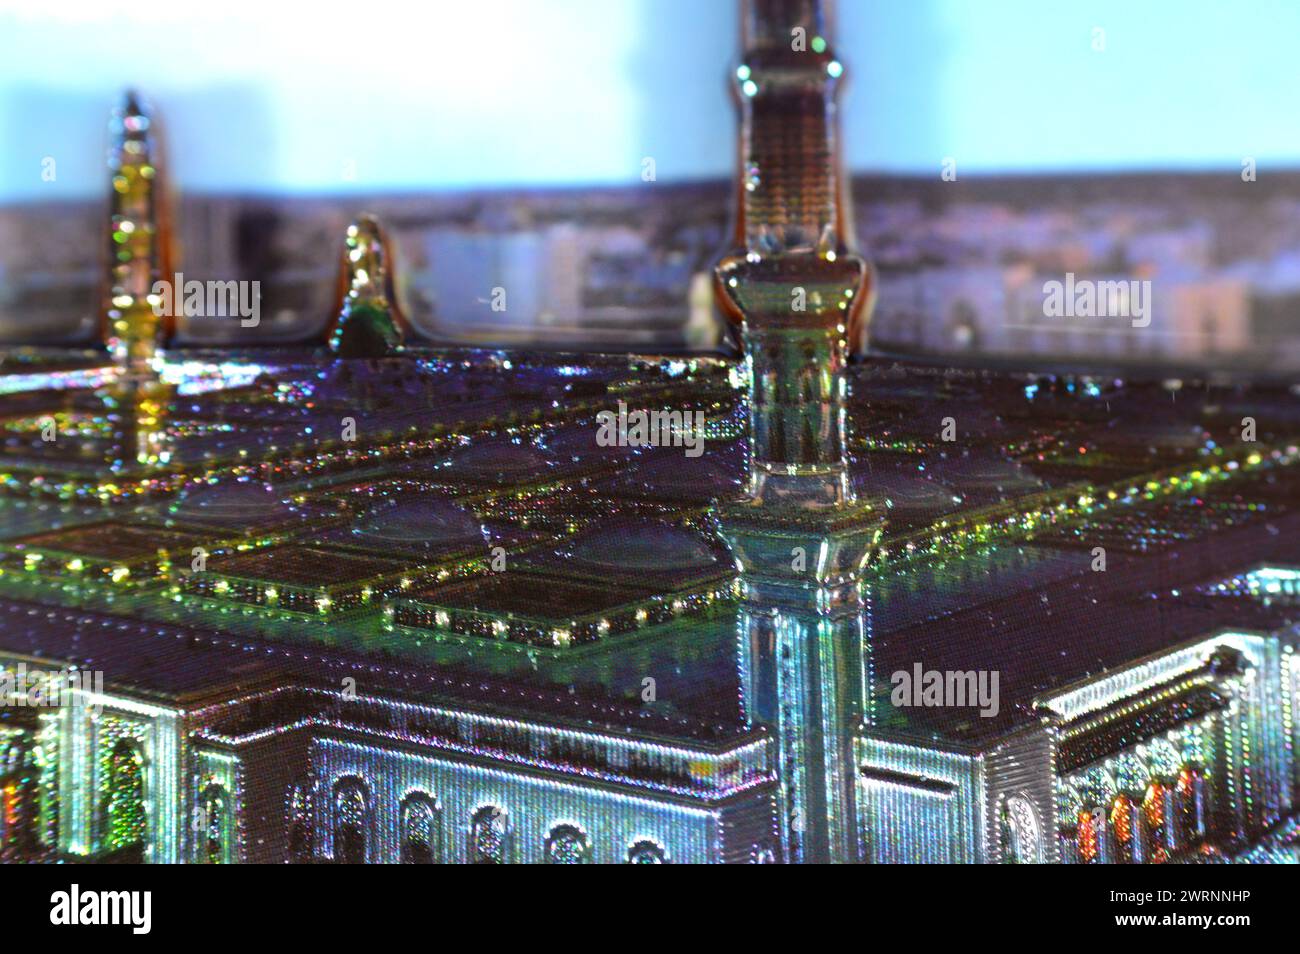 Aimant frigo Medina en forme de mosquée du Prophète, aimant frigo de la mosquée Madinah dans le Royaume d'Arabie Saoudite, c'est la deuxième mosquée buil Banque D'Images